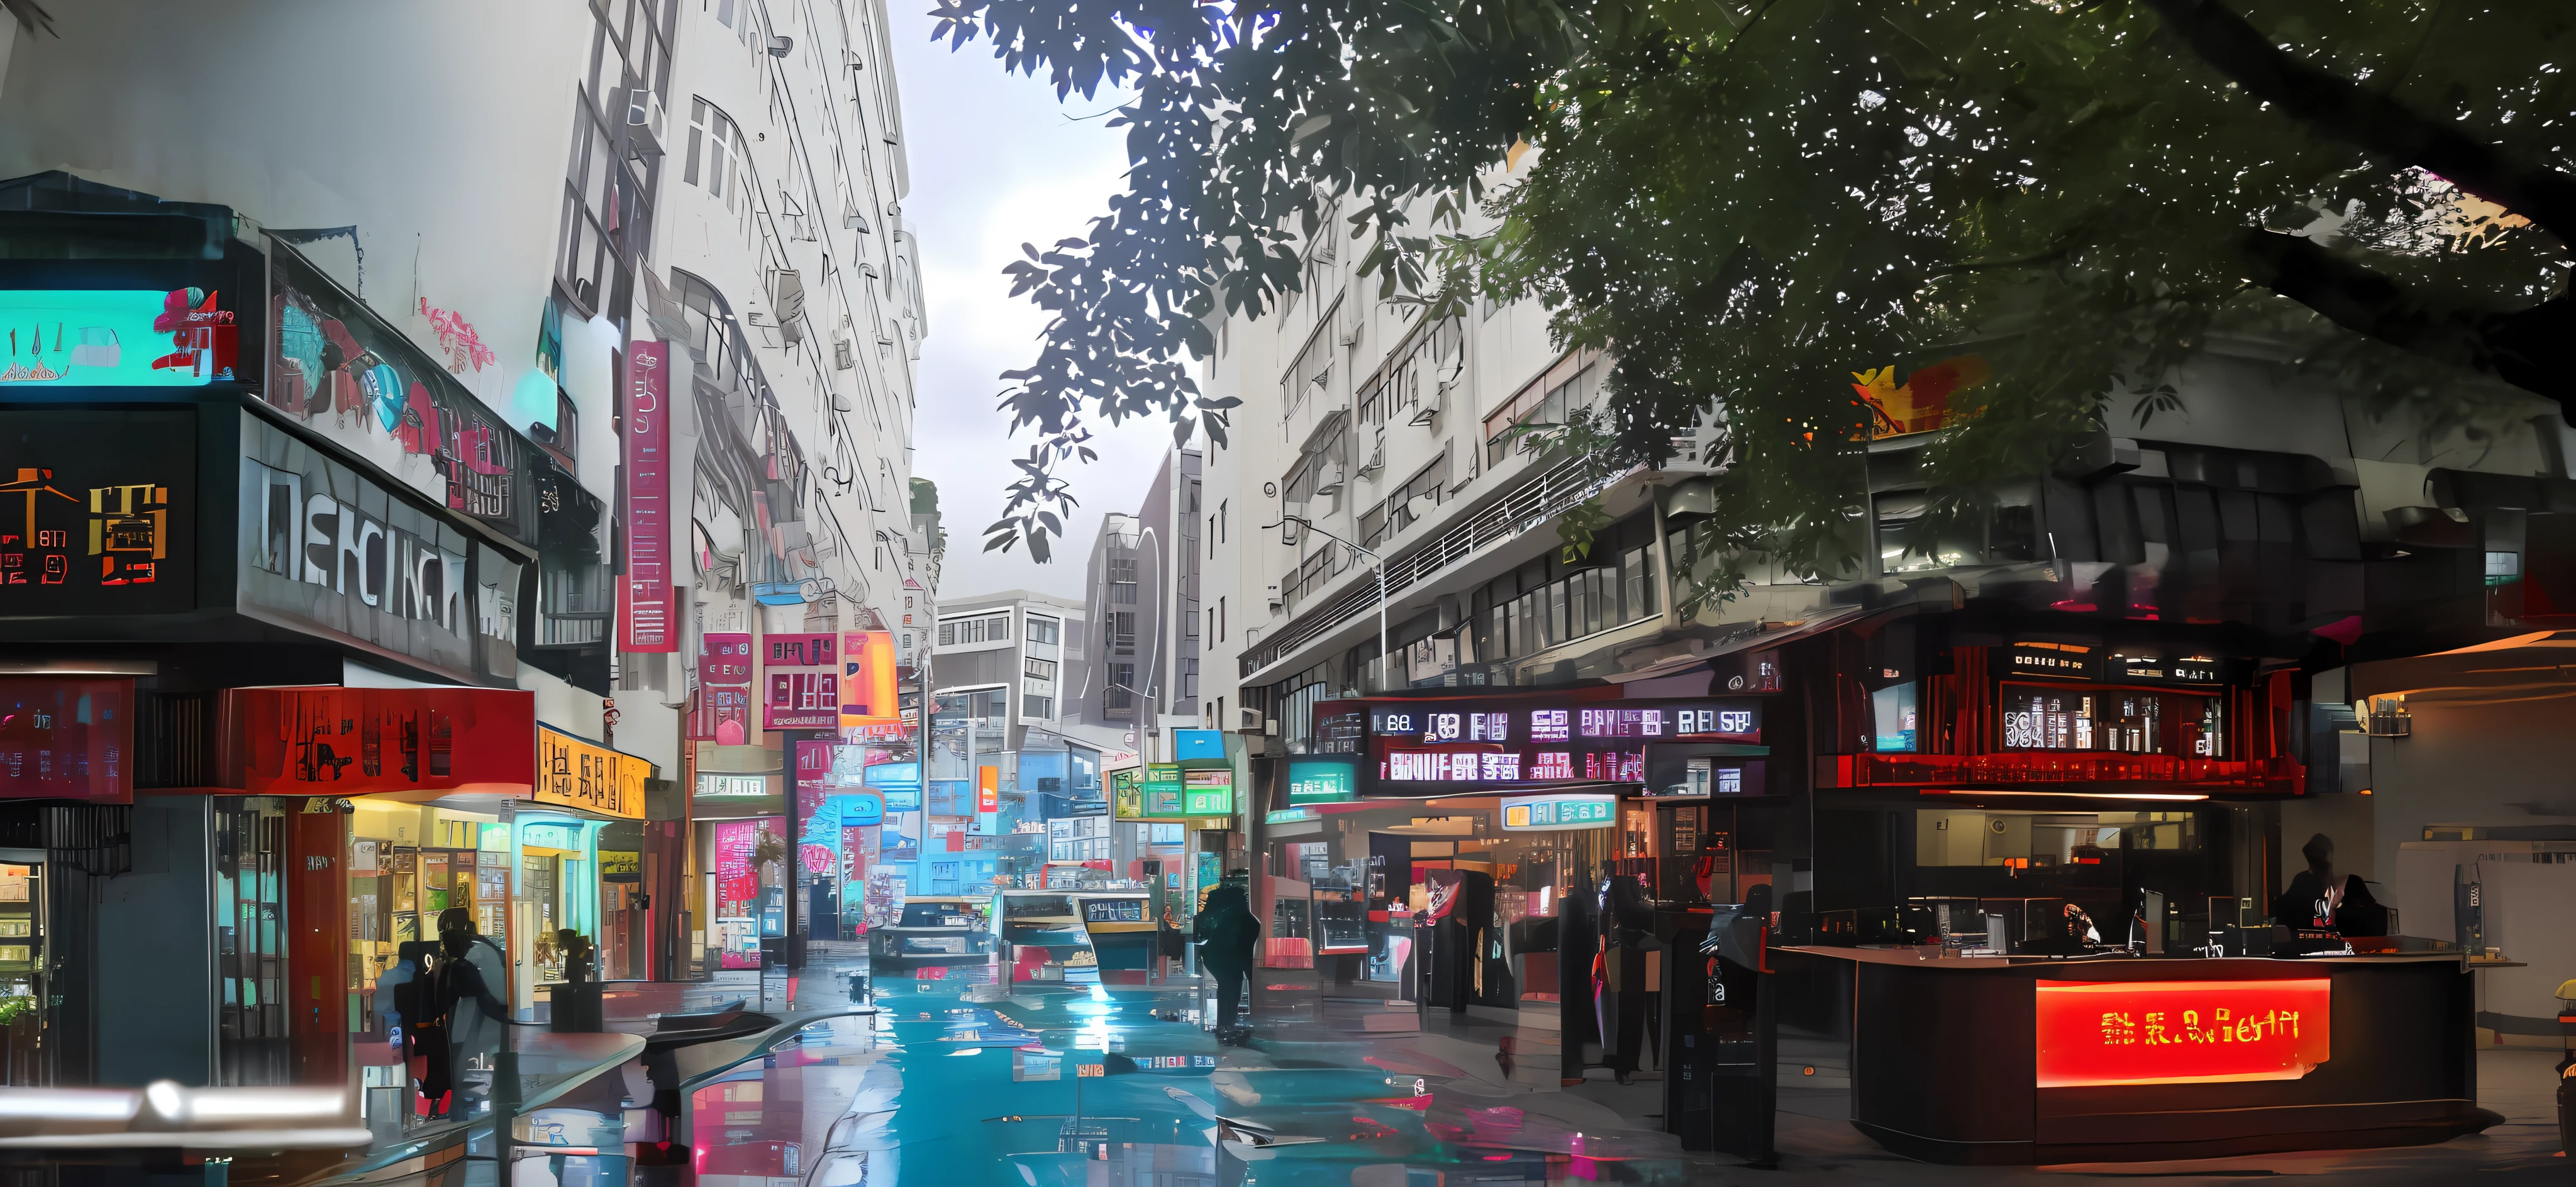 شريط على طراز هونج كونج,شارع هونج كونج,حانة مفتوحة,ضوء النيون,لافتة كبيرة,الأناقة,الراقي,هناك طعم,تفاصيل عالية للغاية,ضوء دافئ ودافئ